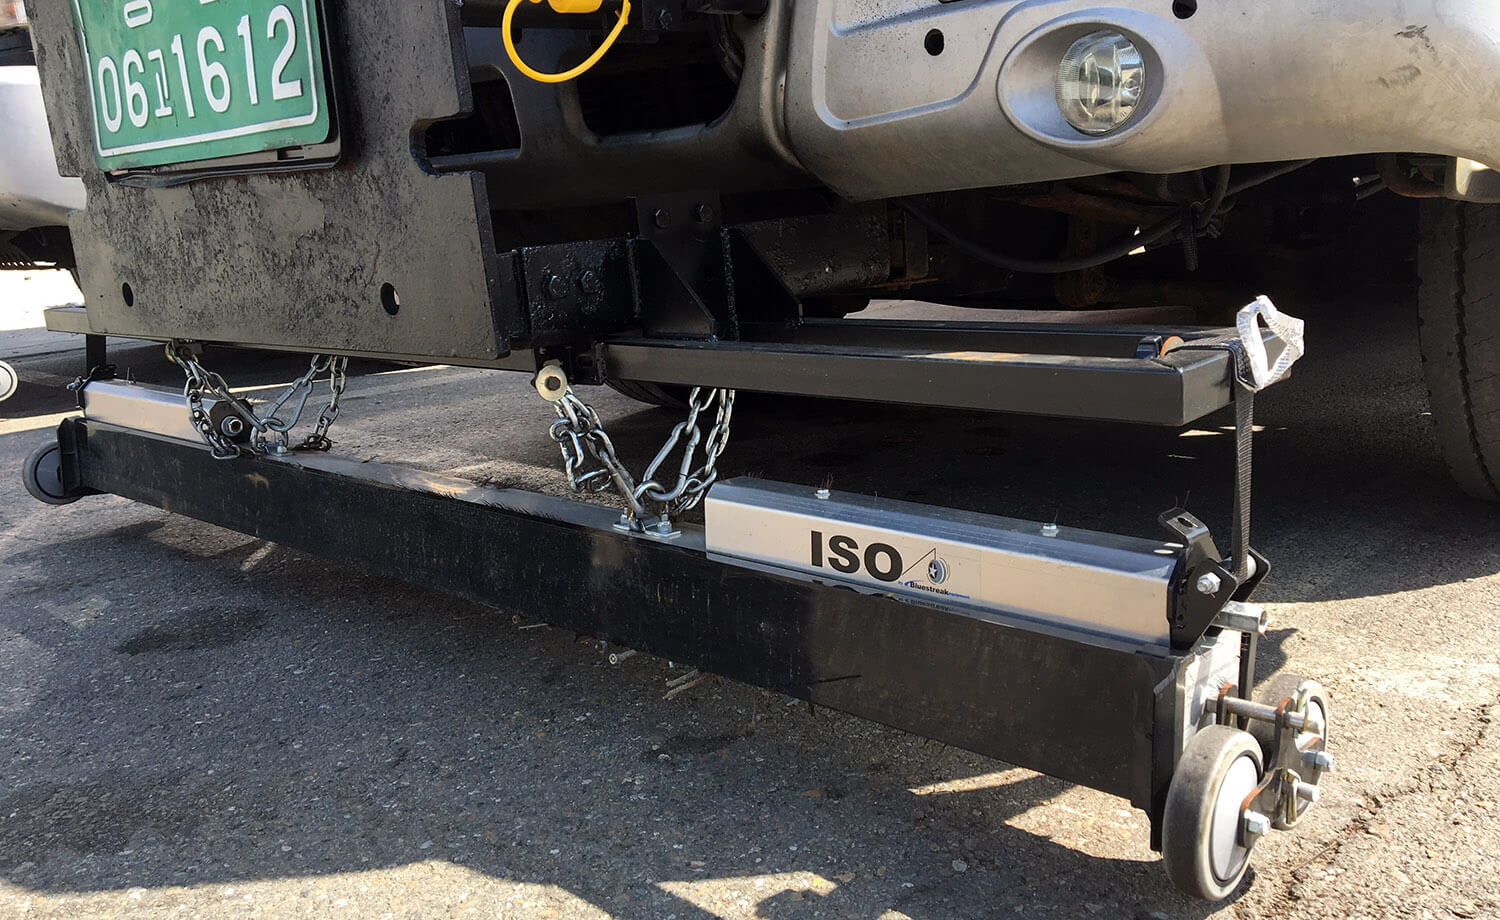 iso magnet for commercial trucks